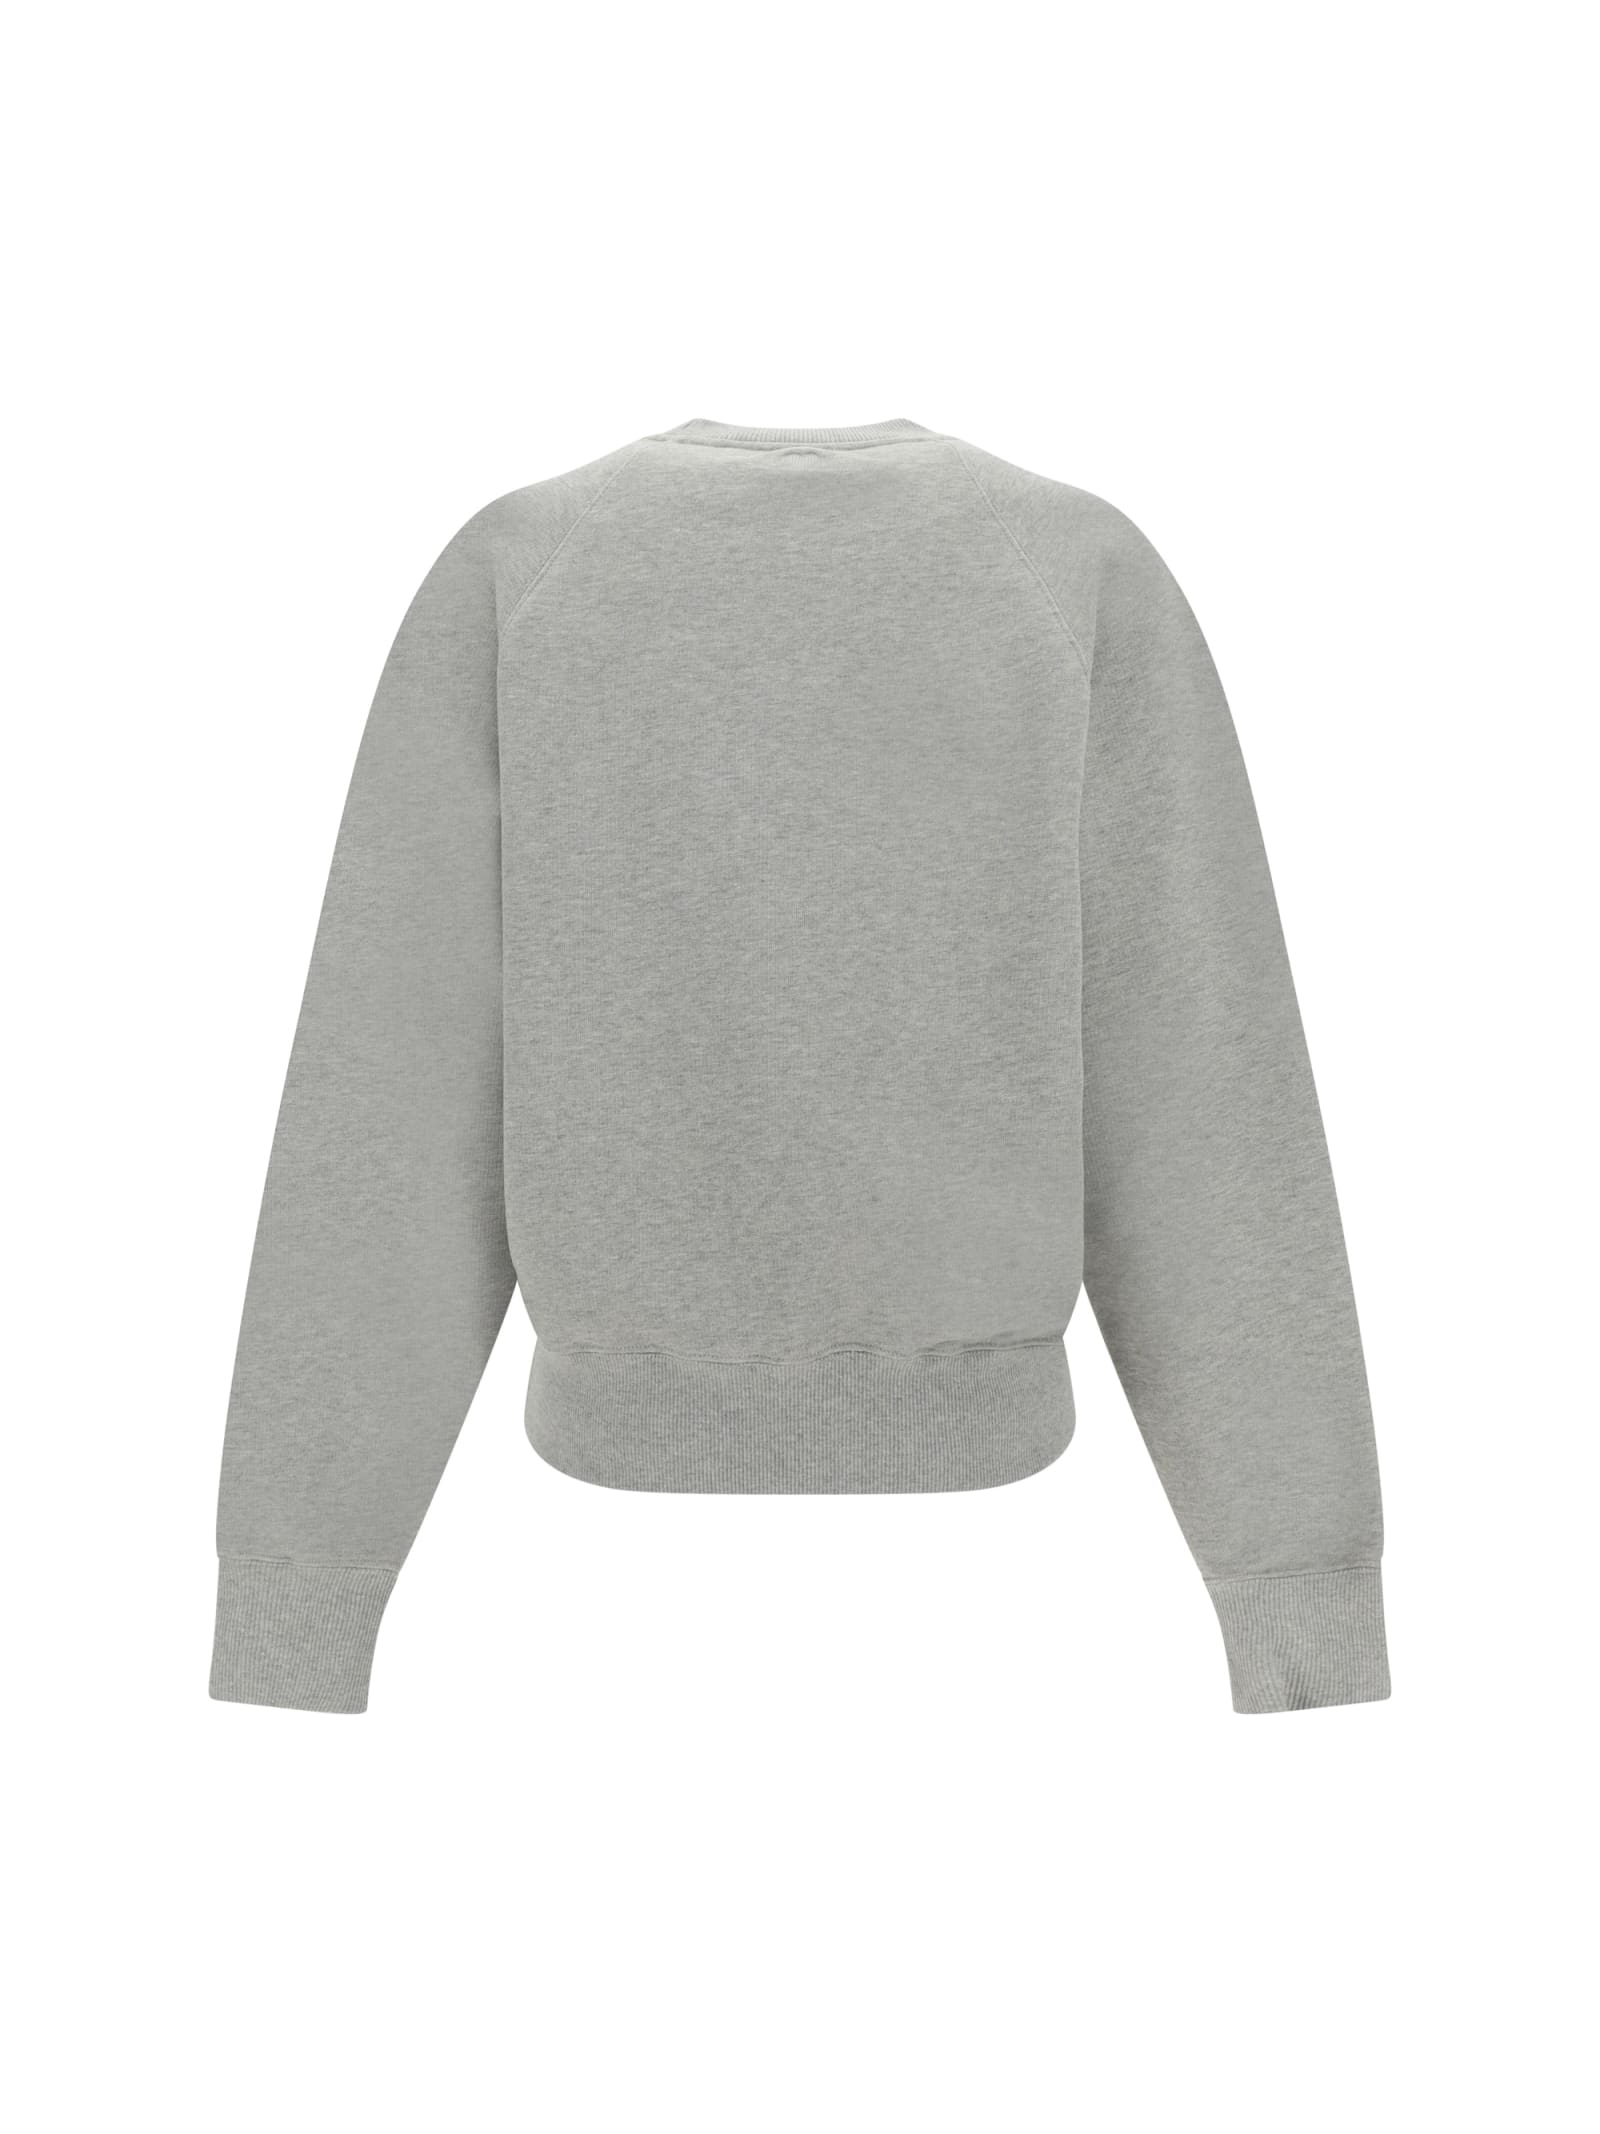 Shop Ami Alexandre Mattiussi Sweatshirt In Heather Ash Grey